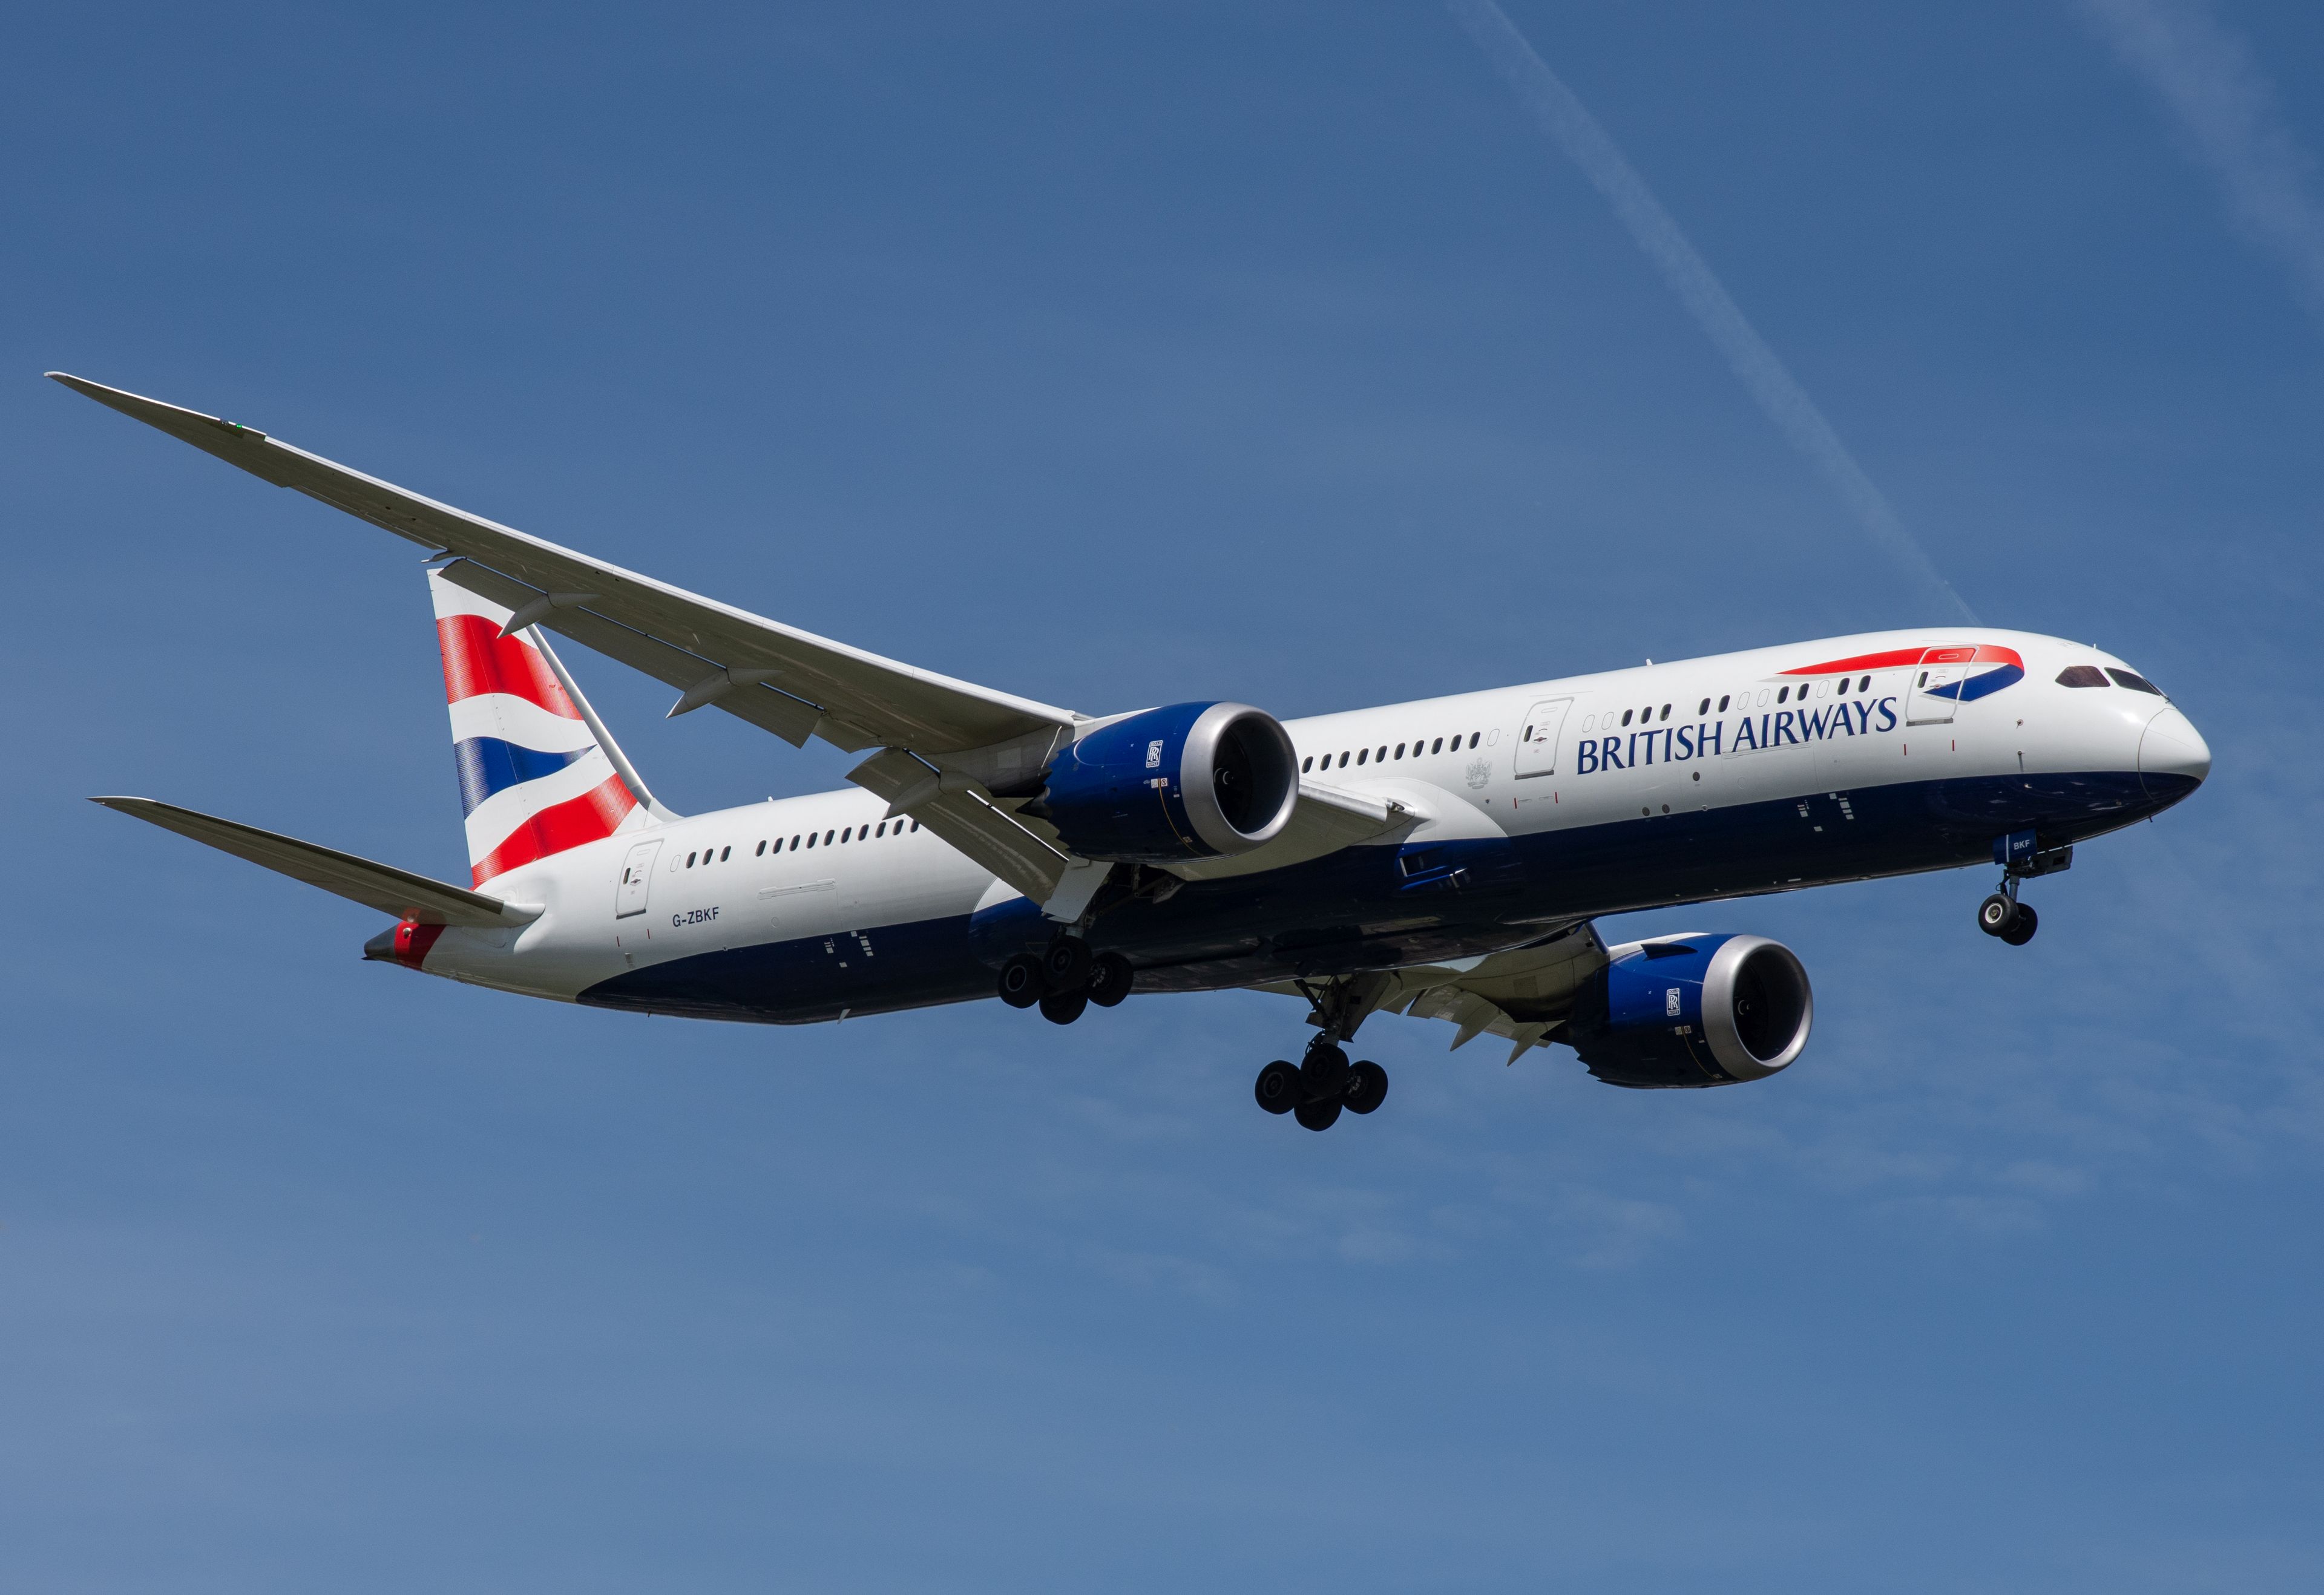 G-ZBKF/GZBKF British Airways Boeing 787 Airframe Information - AVSpotters.com